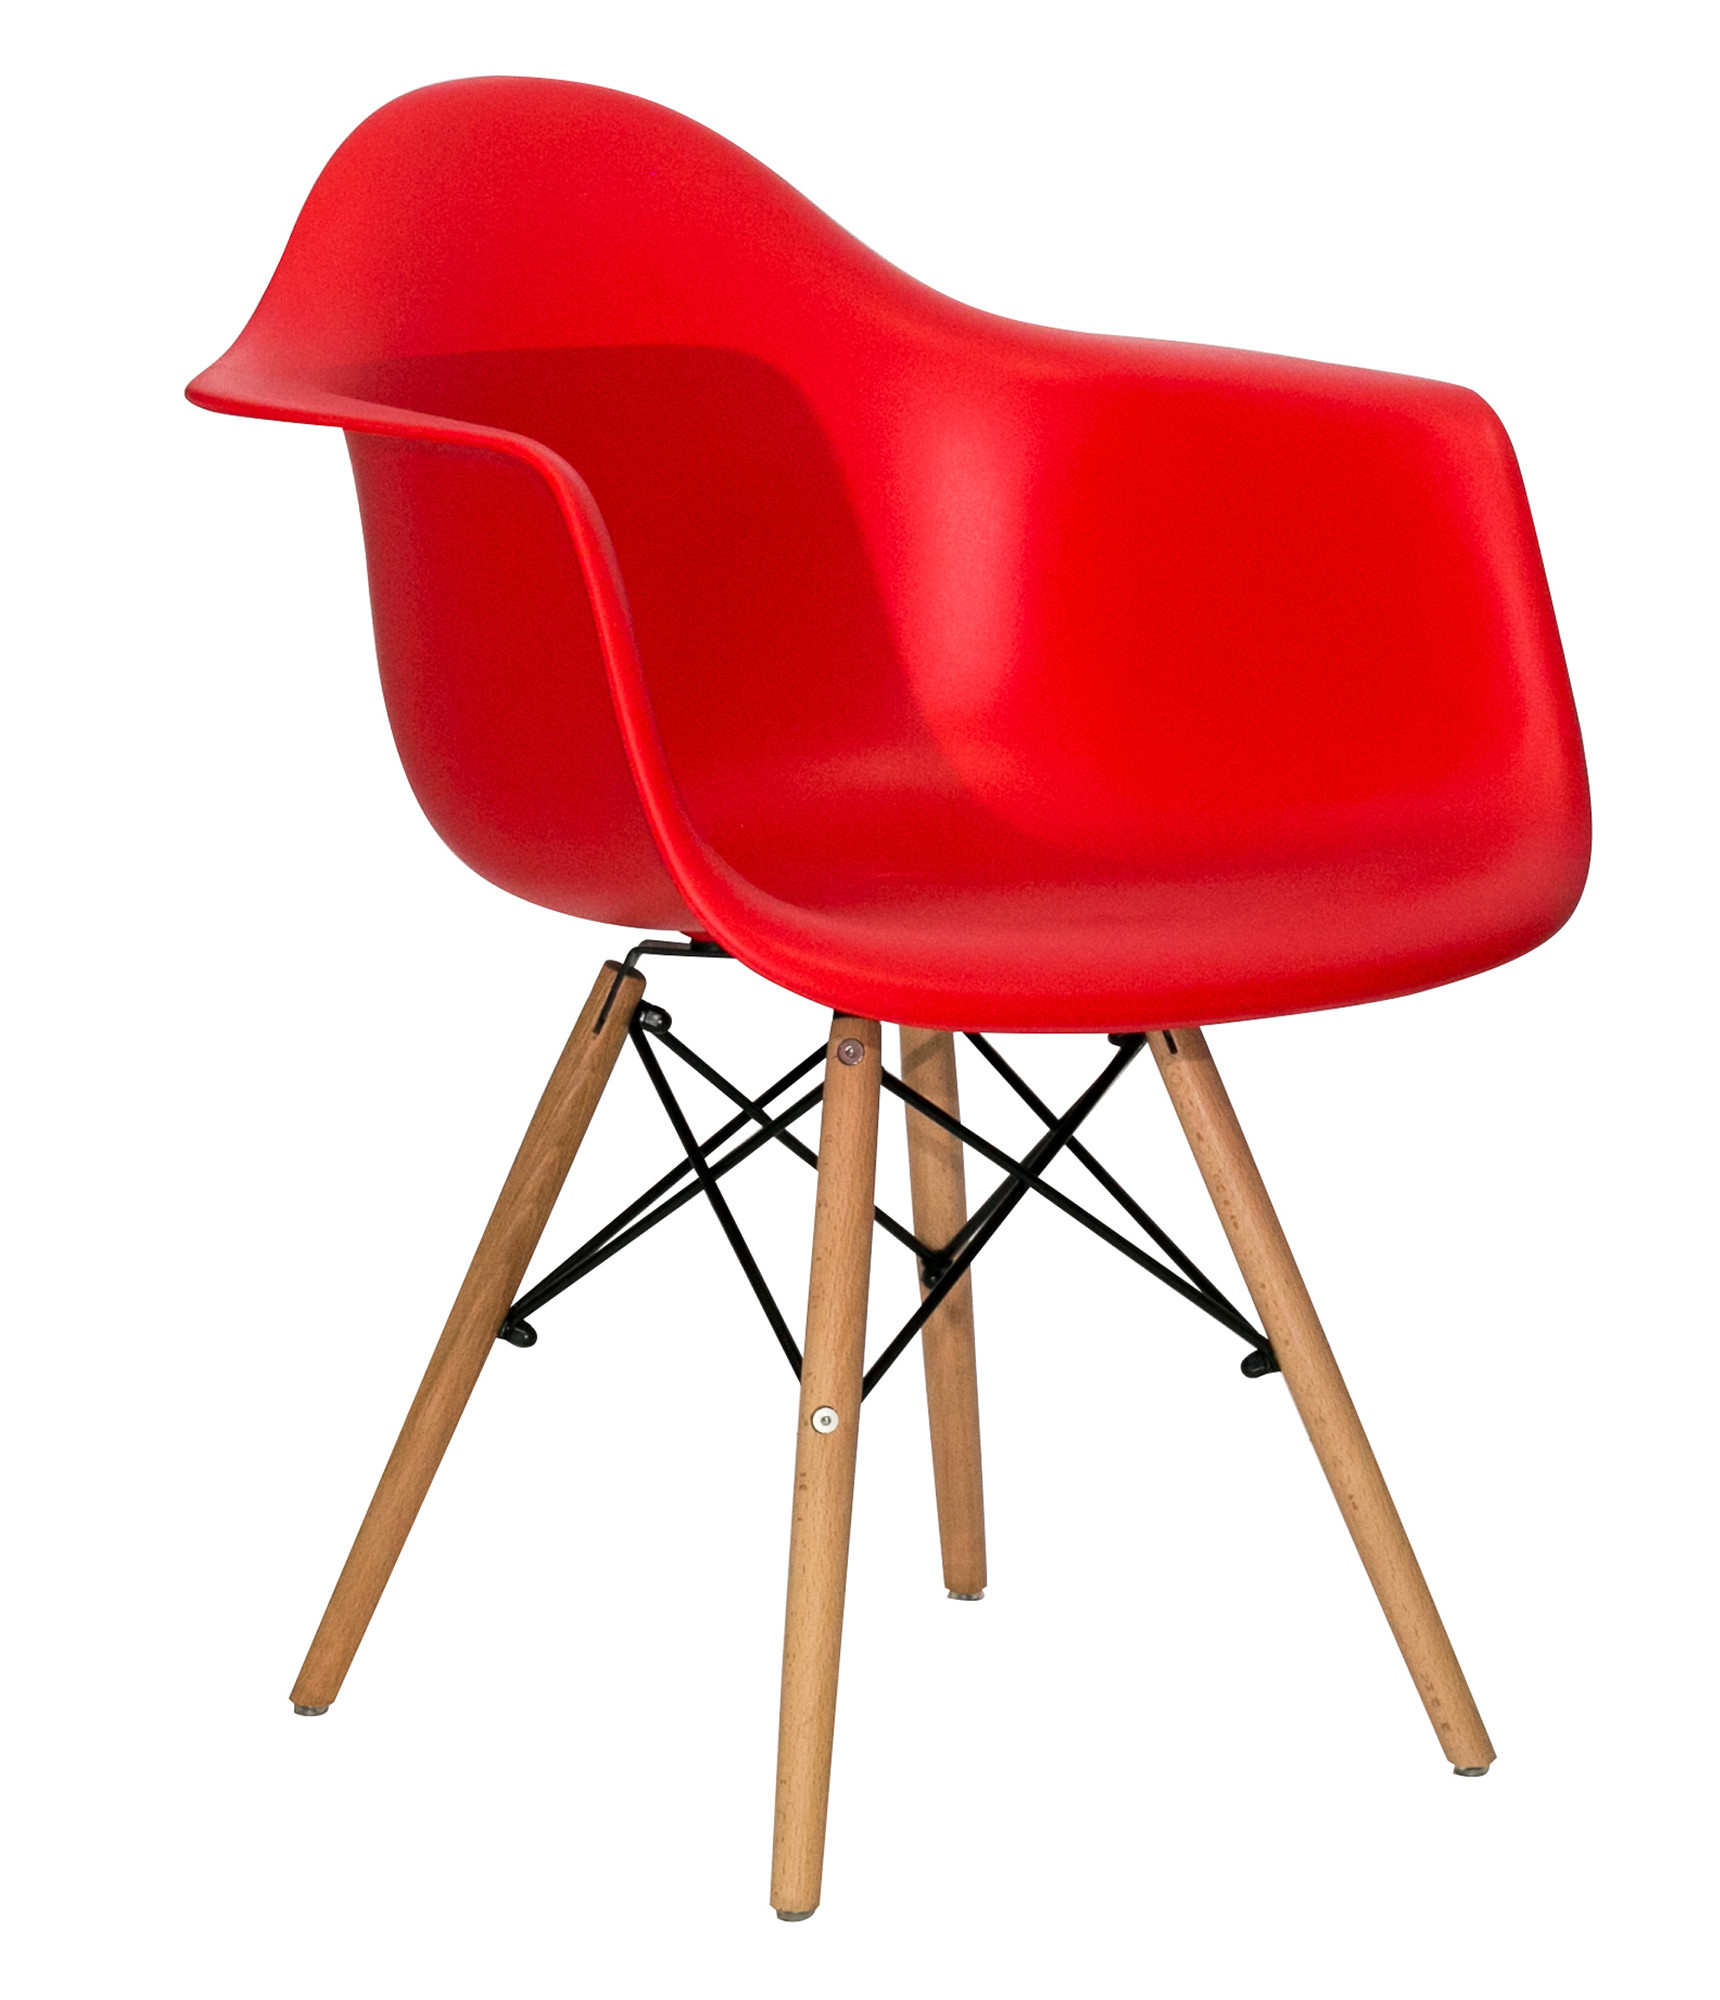 Стул-кресло Eames красный, каркас деревянный